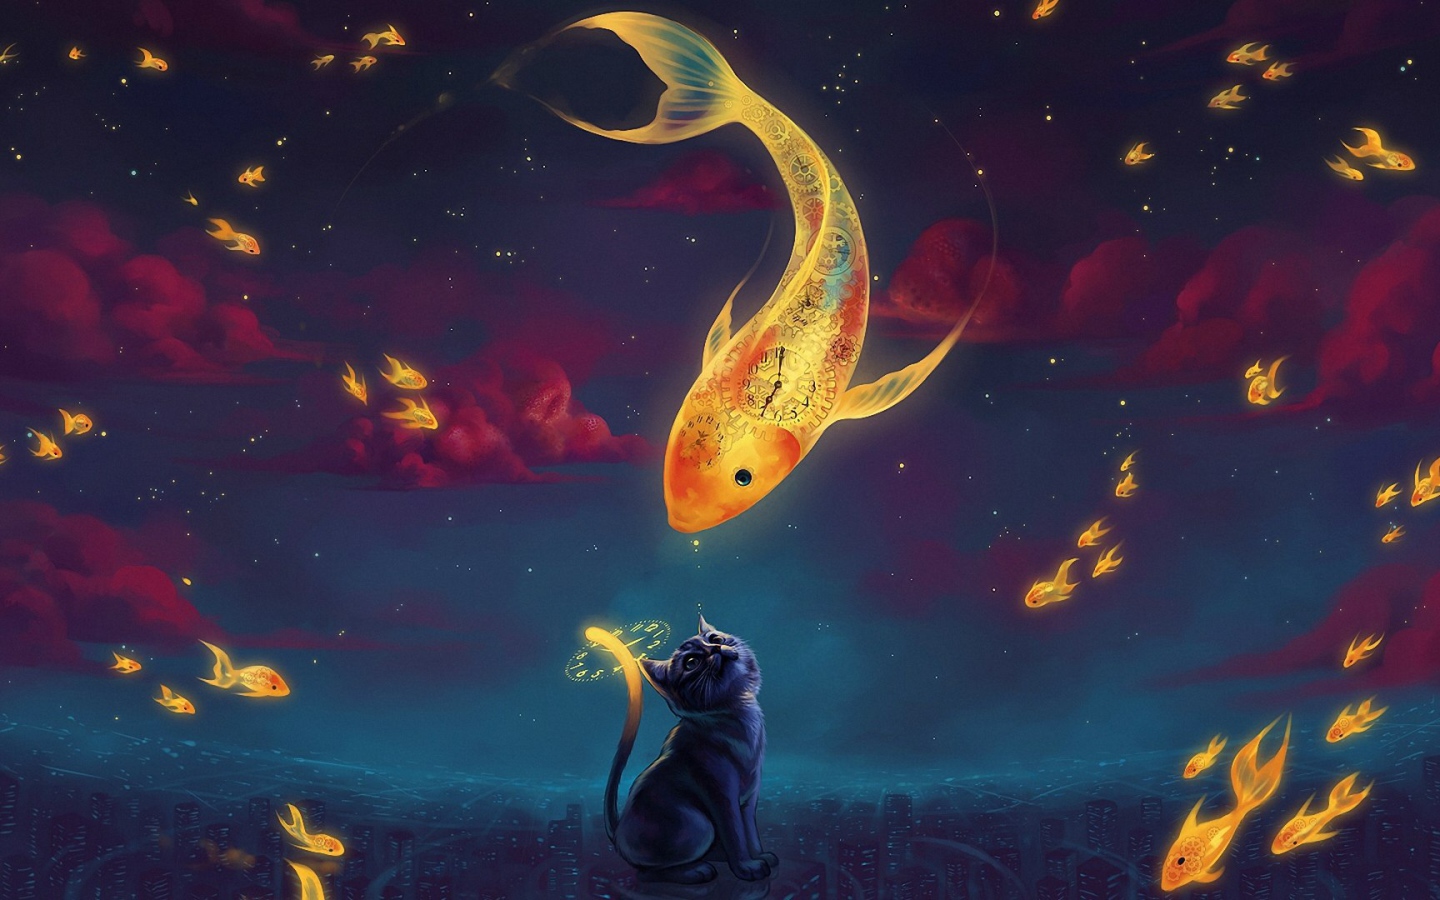 Cat and Goldfish